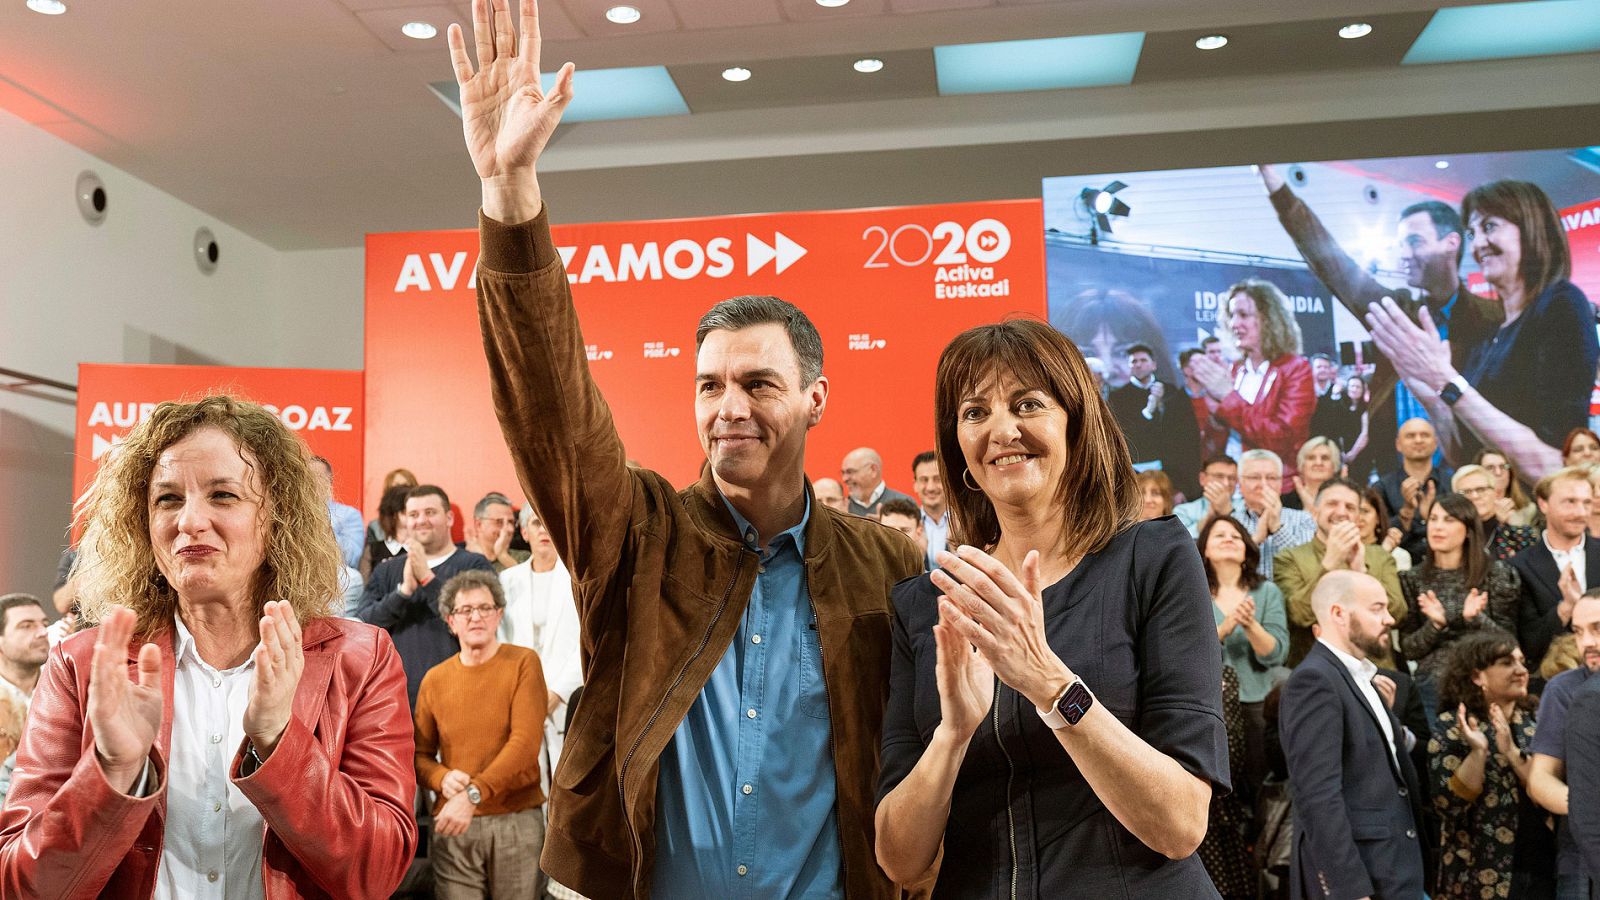 Elecciones vascas | Sánchez defiende el Estatuto vasco y el diálogo "frente a las zancadillas" - RTVE.es